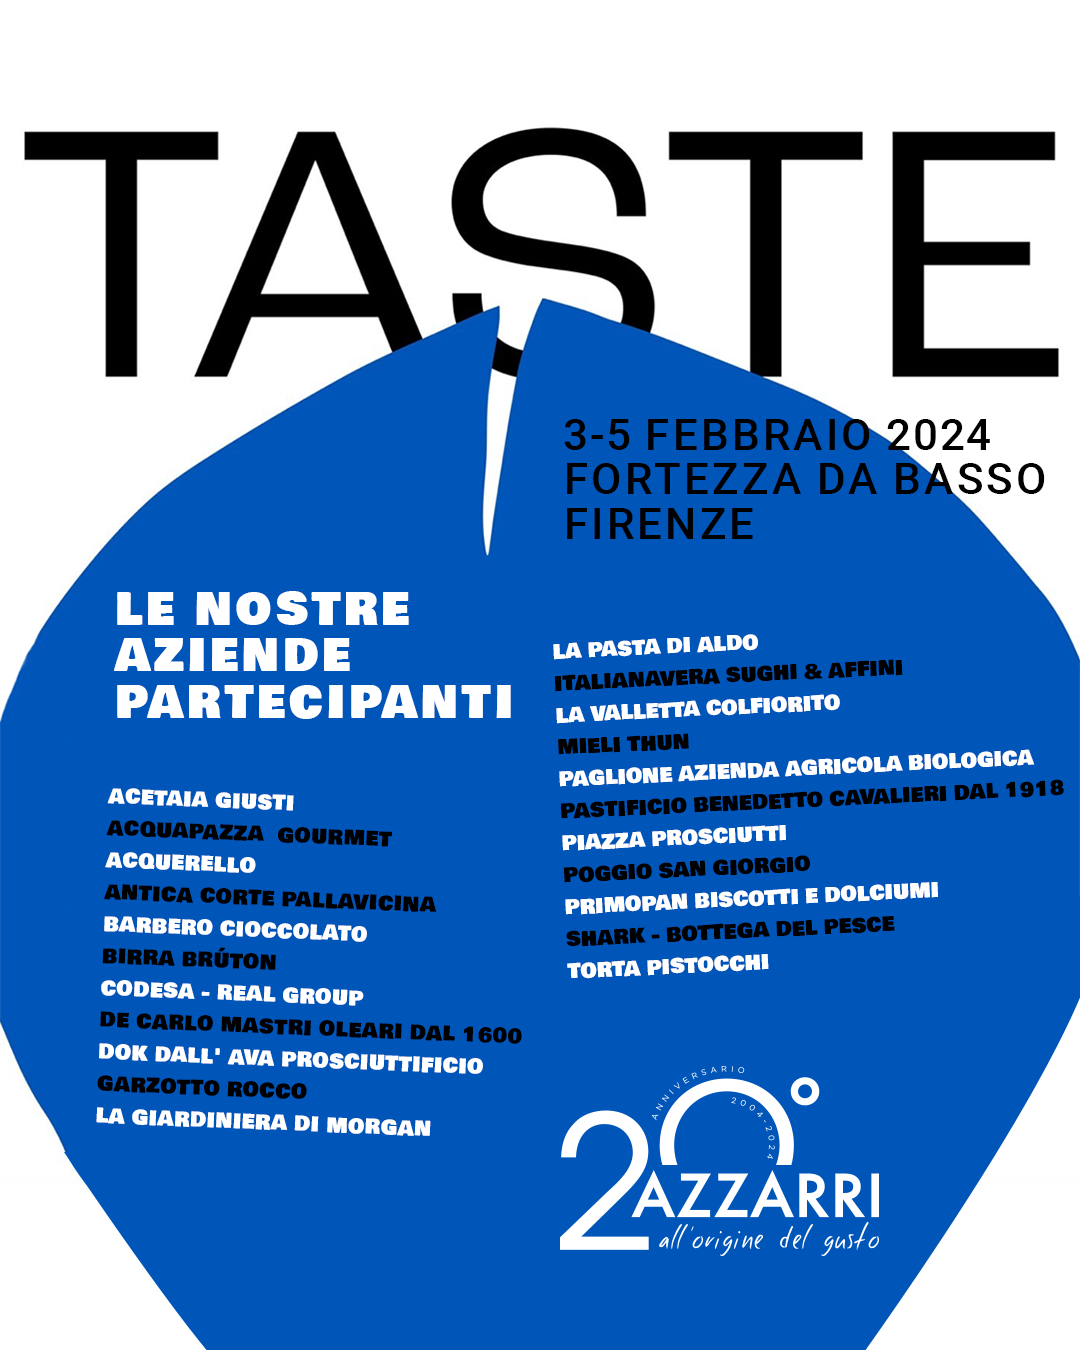 Taste 2024